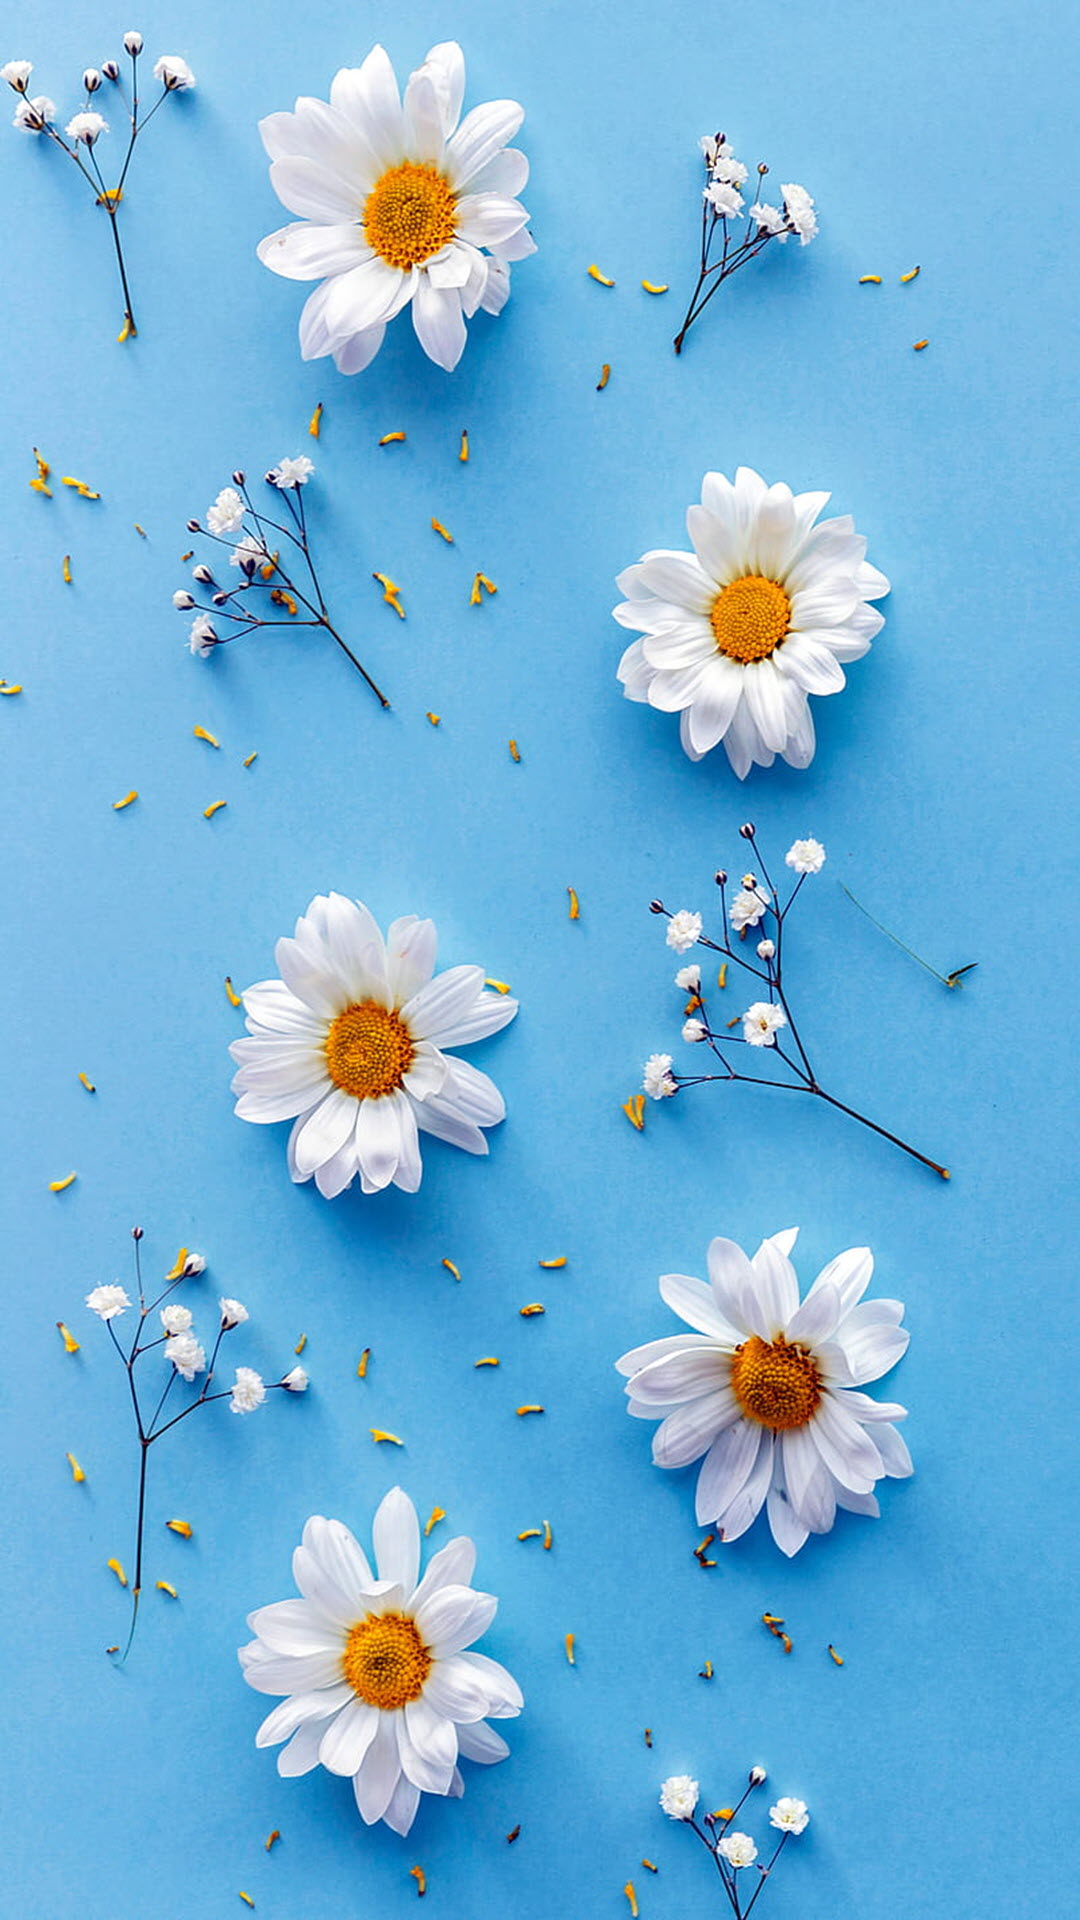 Hình nền cúc họa mi trắng siêu đẹp | Hình nền hoa, Hoa cúc, Hình nền